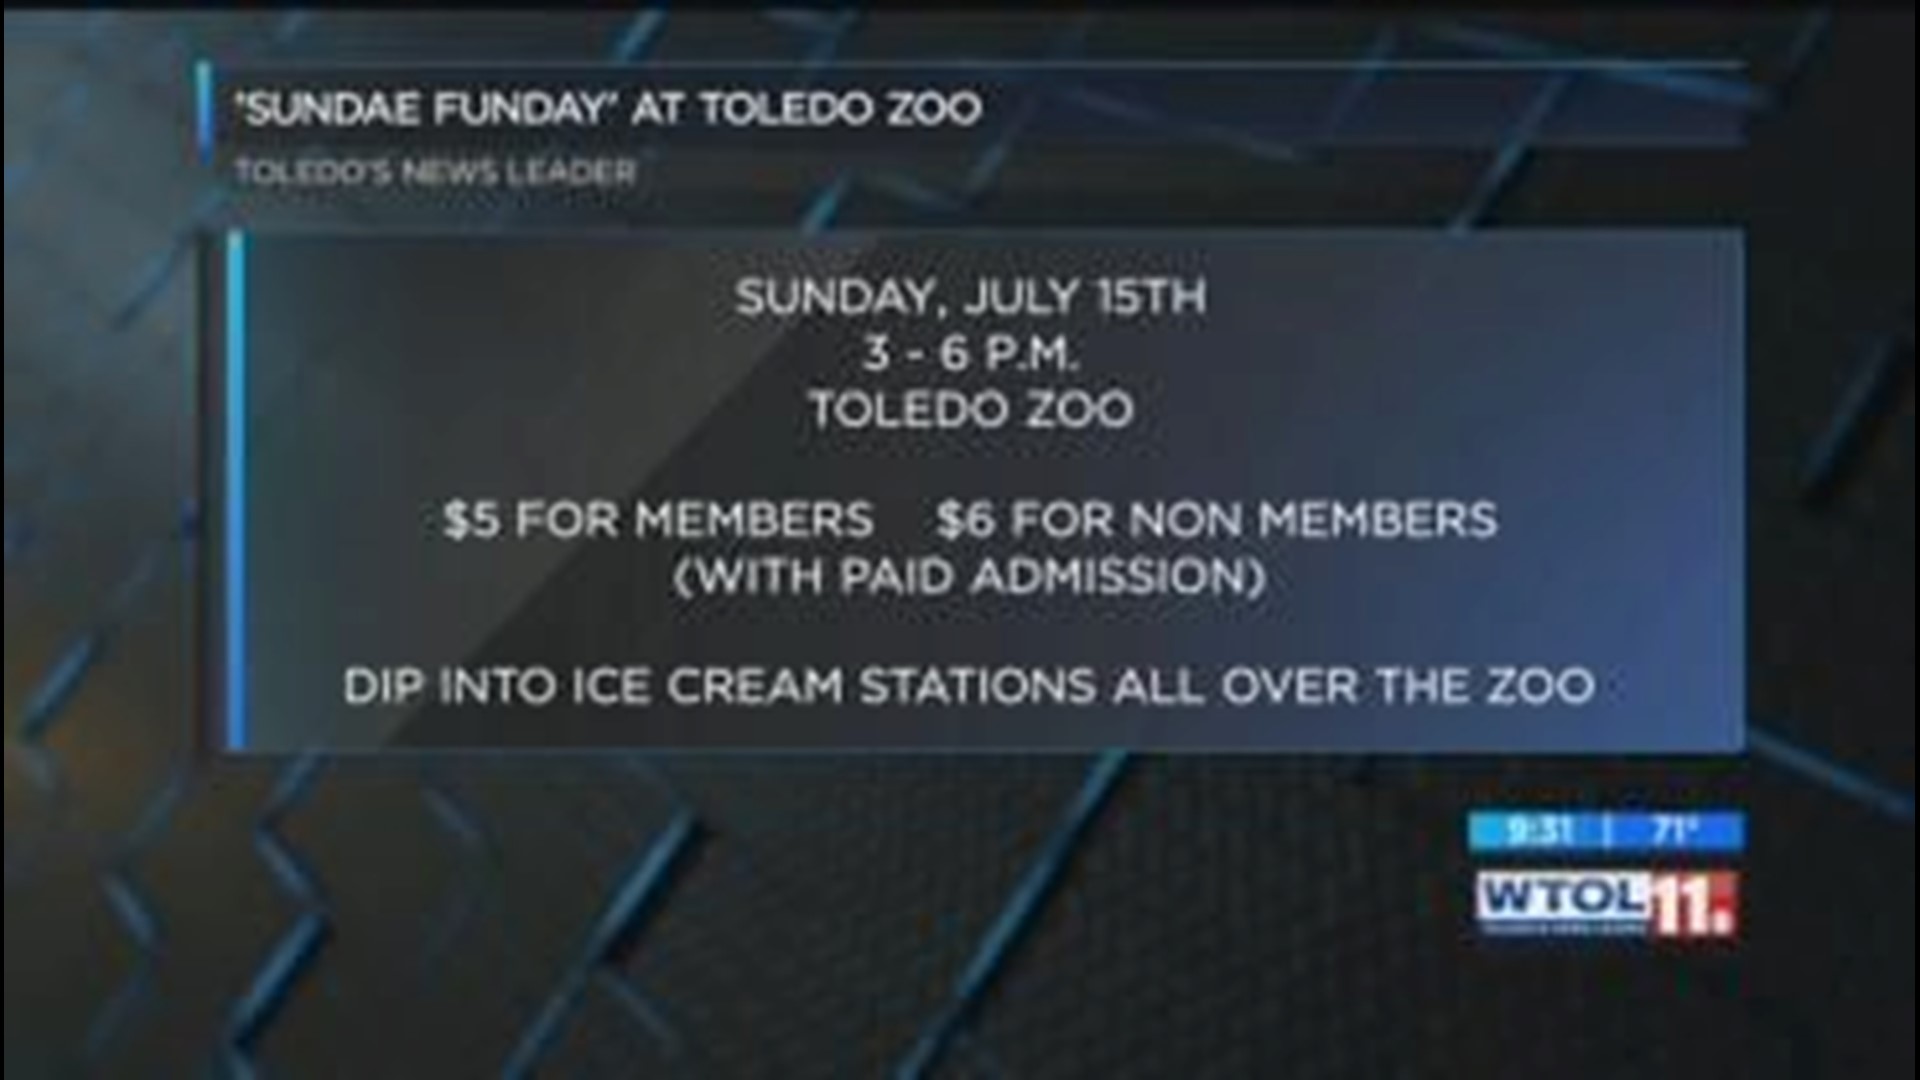 Enjoy ice cream at the Toledo Zoo at Sundae Funday